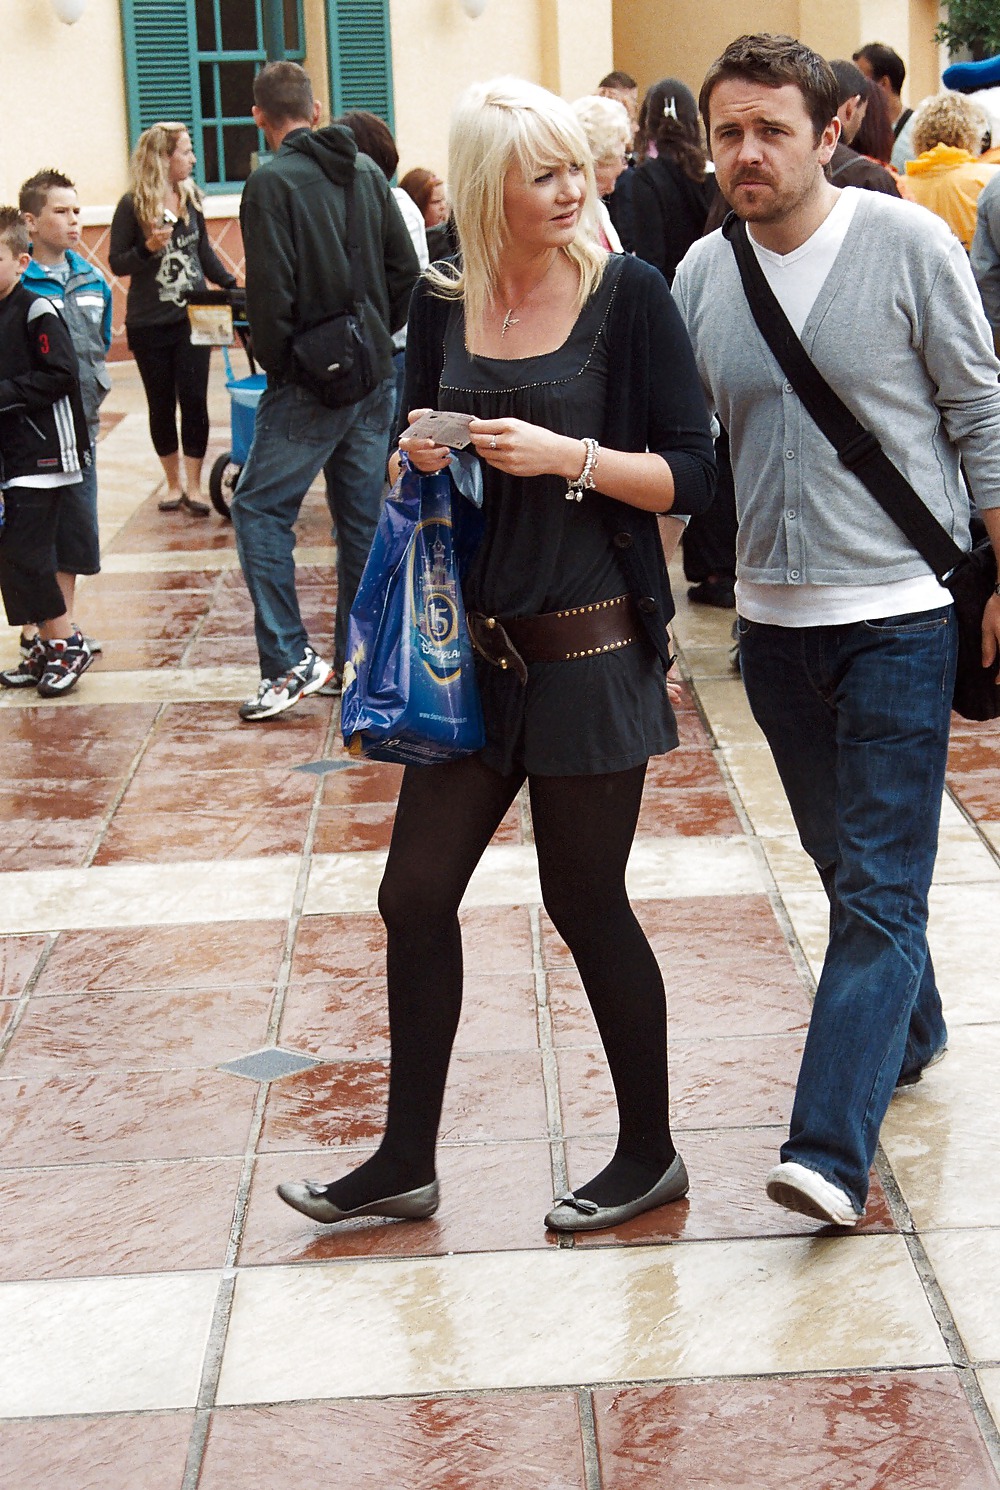 Stocking girls in public. Paris, june 2008 #35789518